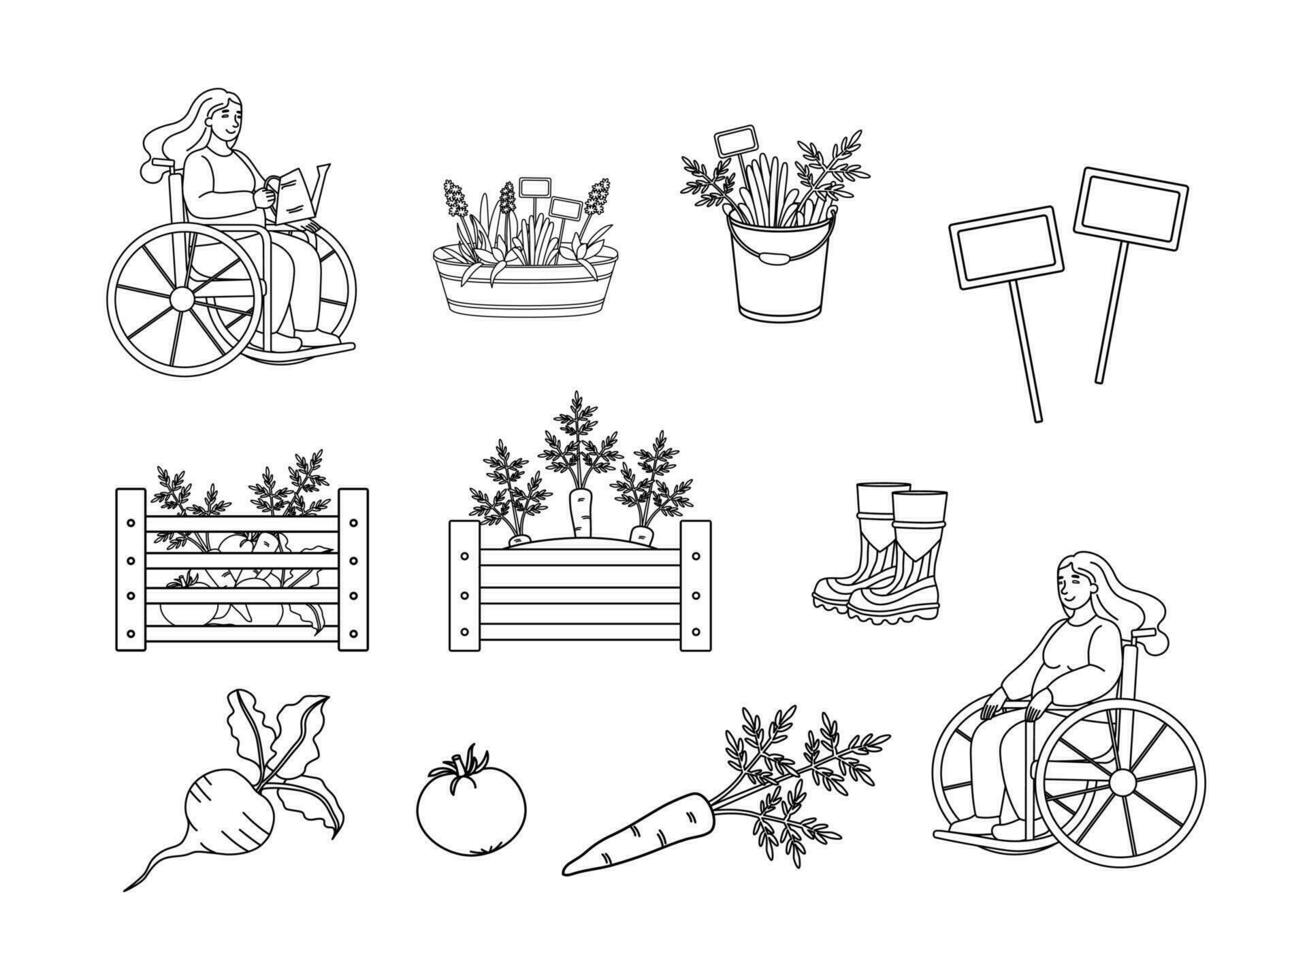 schattig tuinieren elementen - wortels, biet, tomaat, dozen van groenten, planten in emmers, rubber laarzen. een vrouw in een rolstoel is tuinieren. tuinieren en oogsten schets vector set.